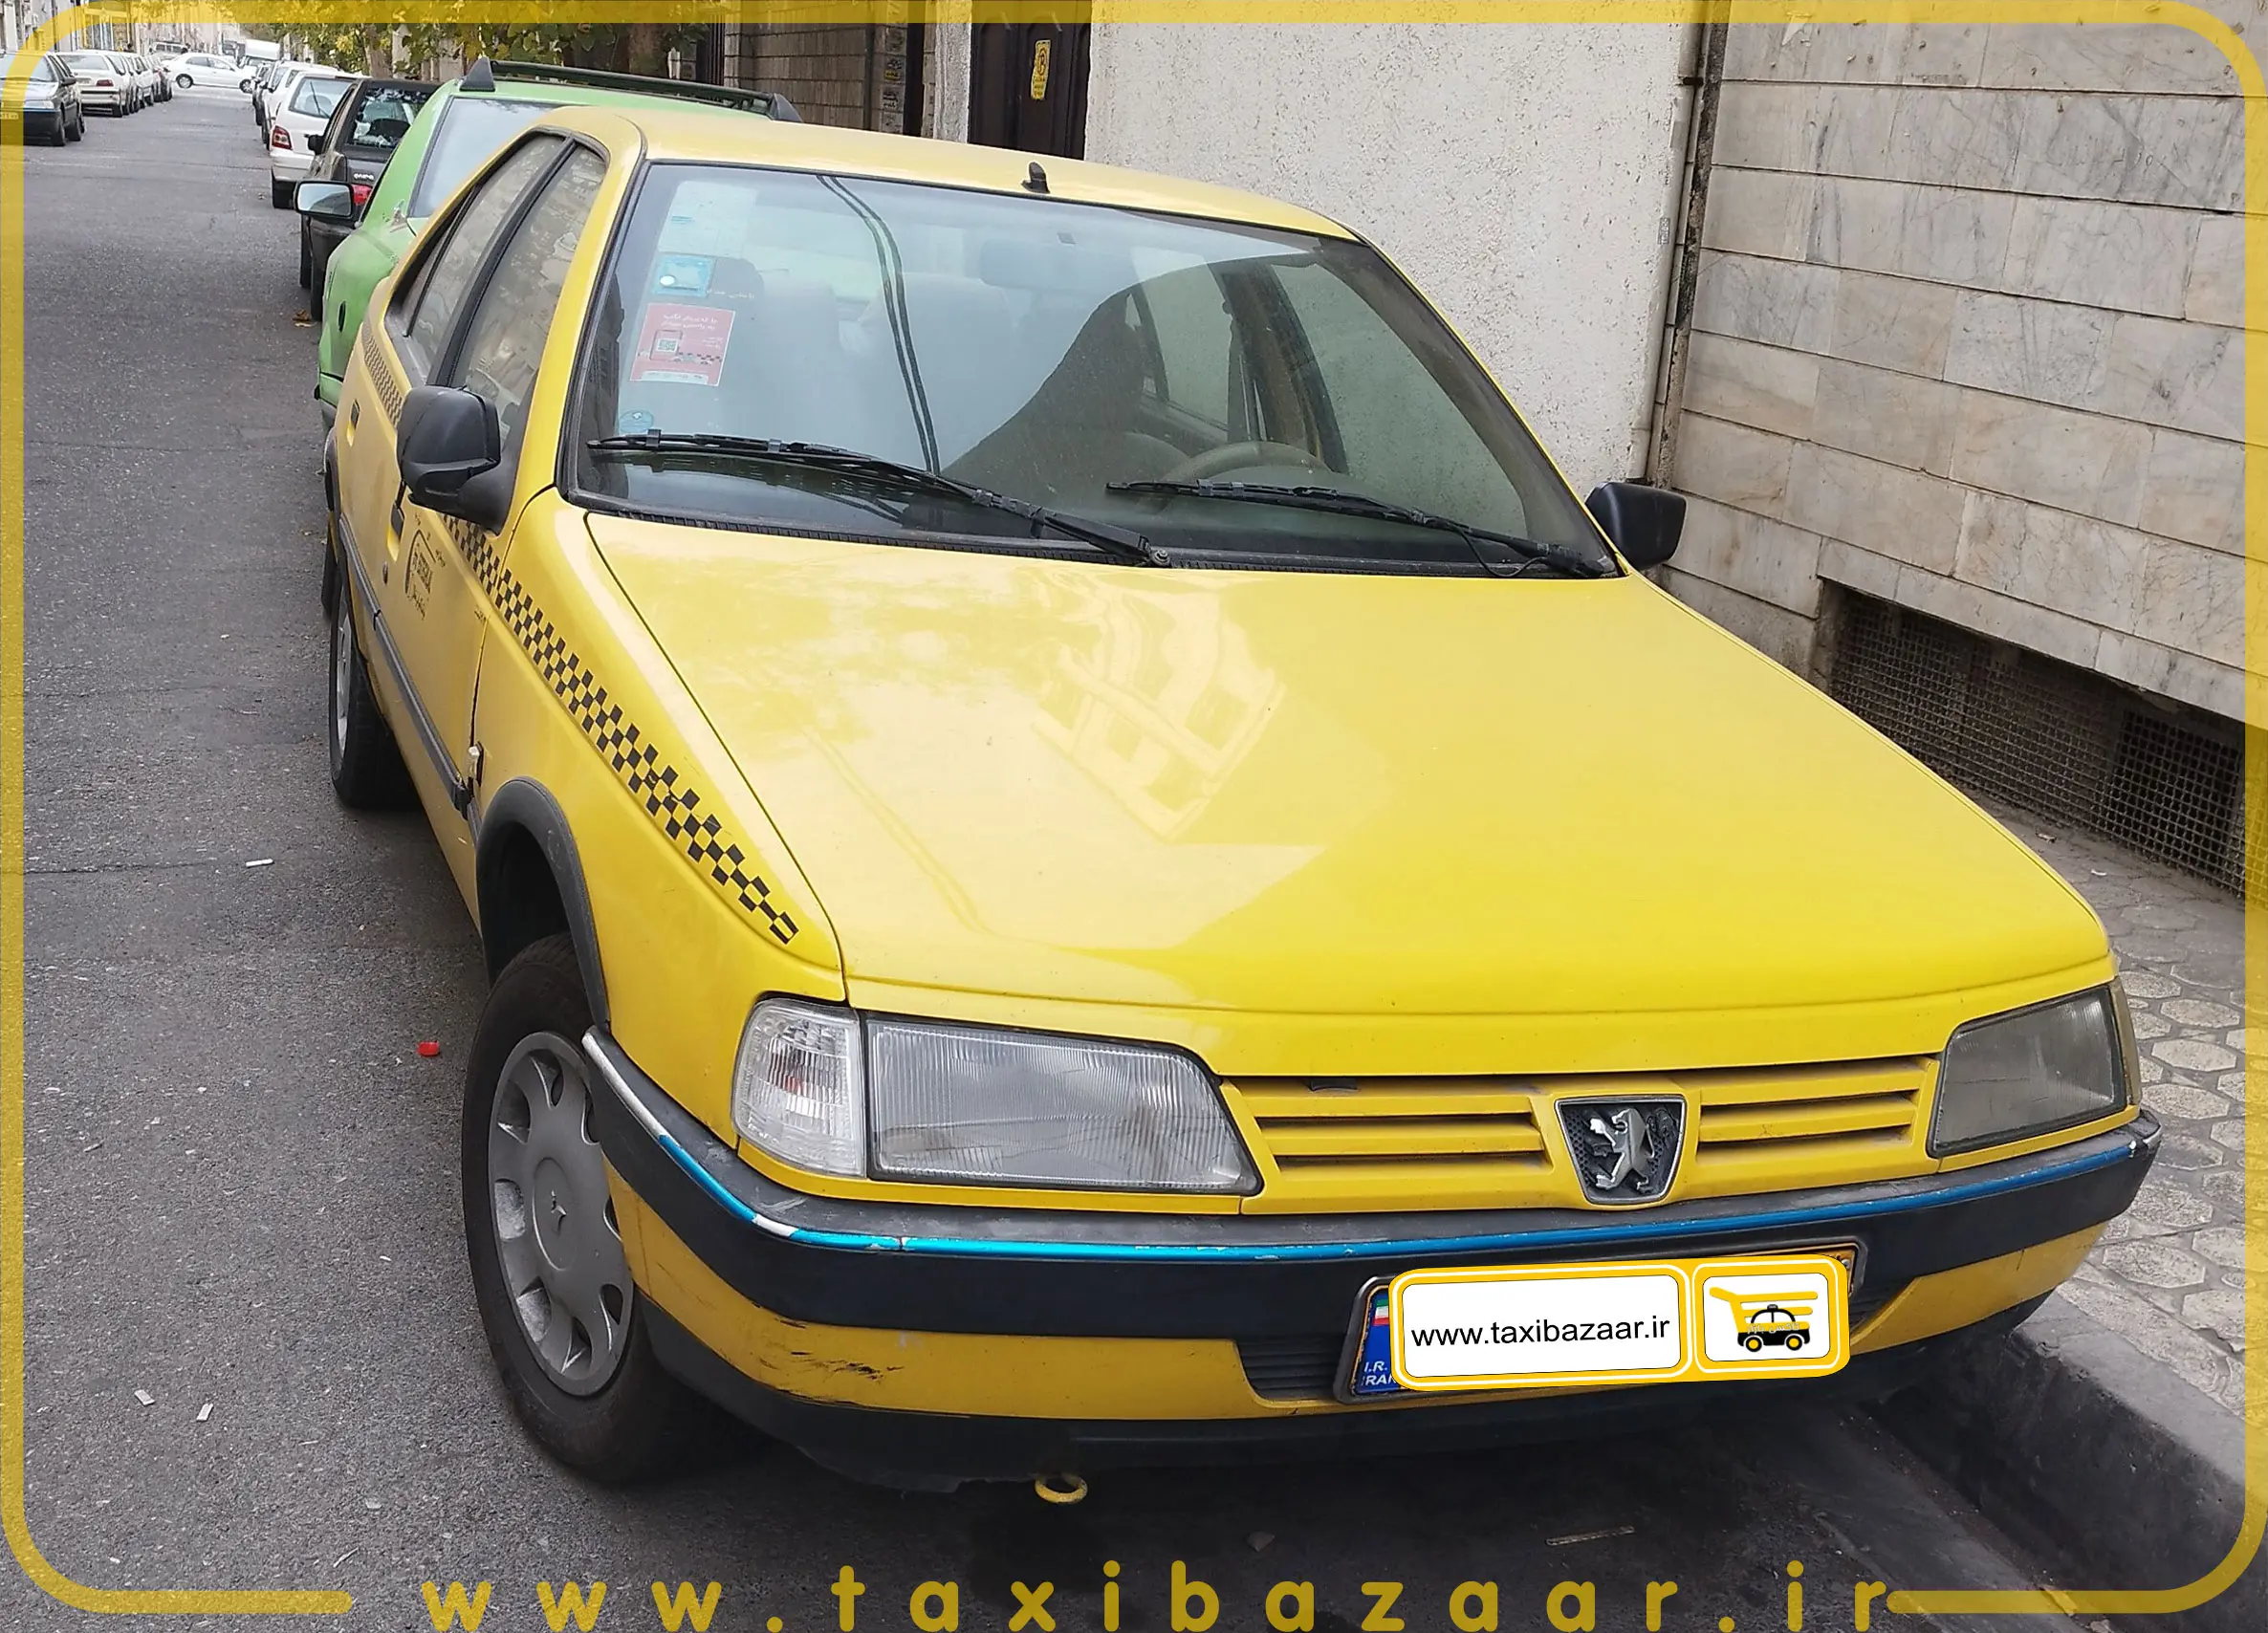 تاکسی پژو رنگ زرد مدل 1395